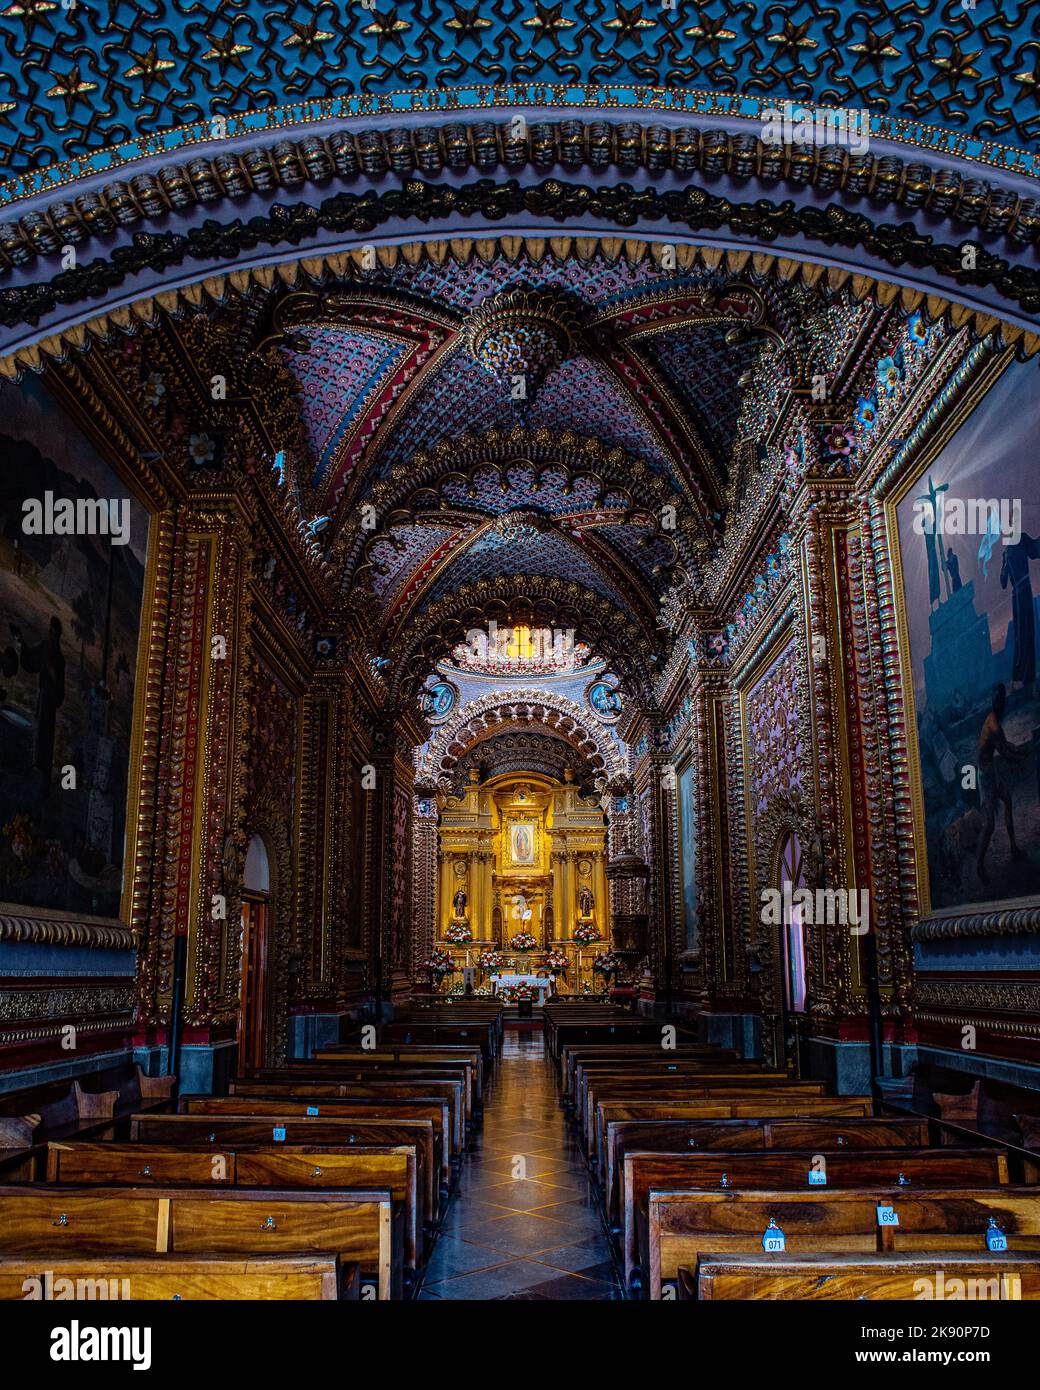 The beautiful interior and the altar of the Santuario Diocesano de Nuestra Senora de Guadalupe (Diocesan Sanctuary of Our Lady of Guadalupe) in Mexico Stock Photo